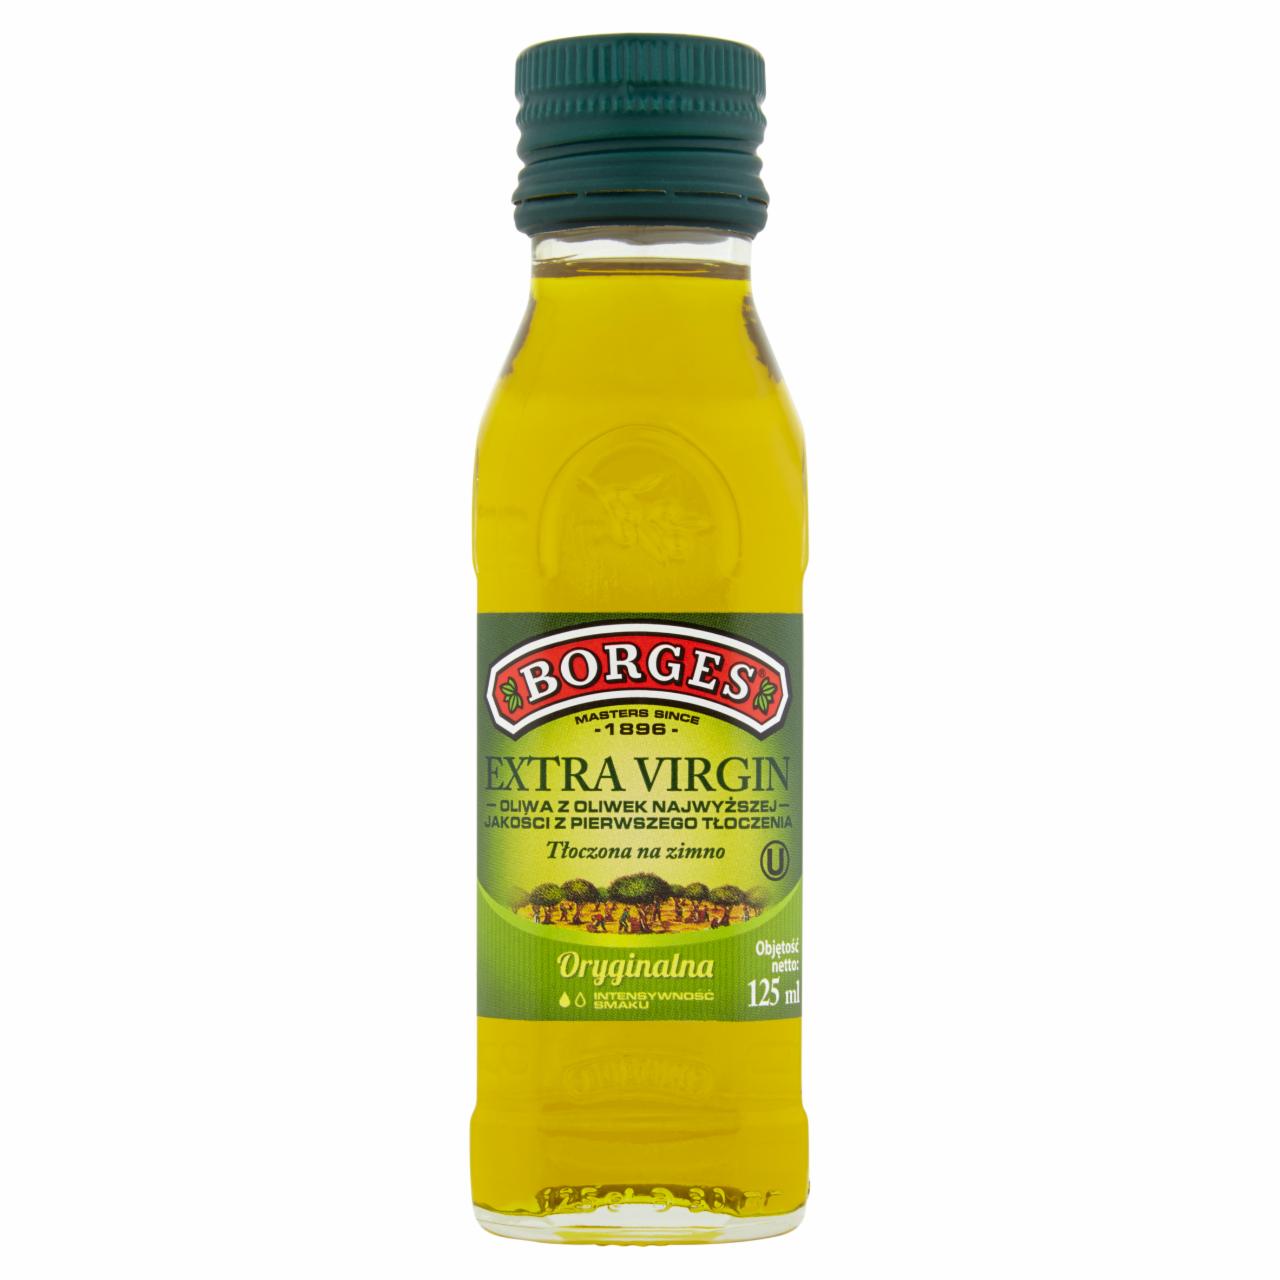 Zdjęcia - Borges Extra Virgin Oliwa z oliwek najwyższej jakości z pierwszego tłoczenia oryginalna 125 ml